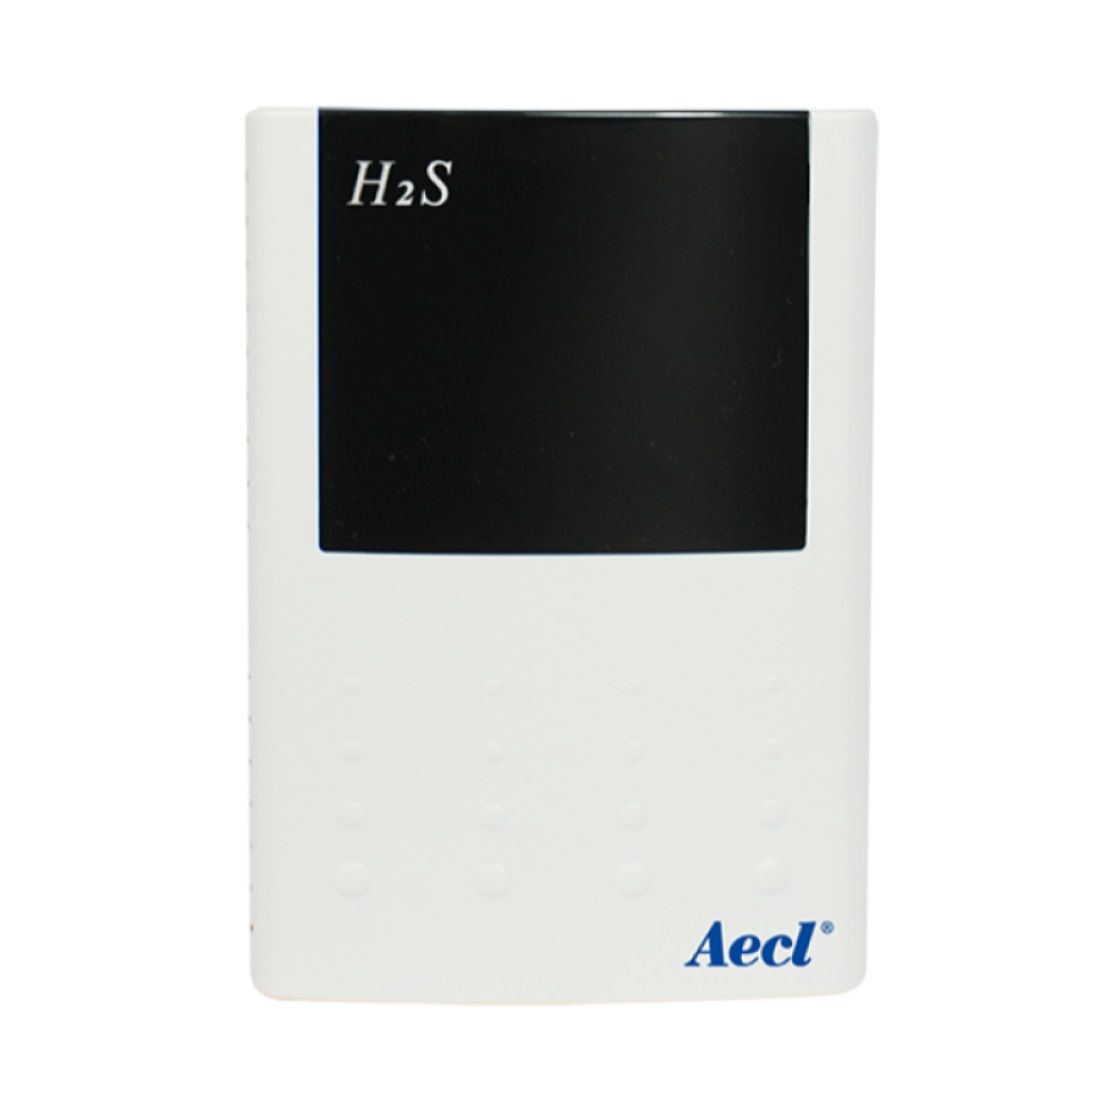 H2S çevre izleme için kablosuz algılama çözümü.